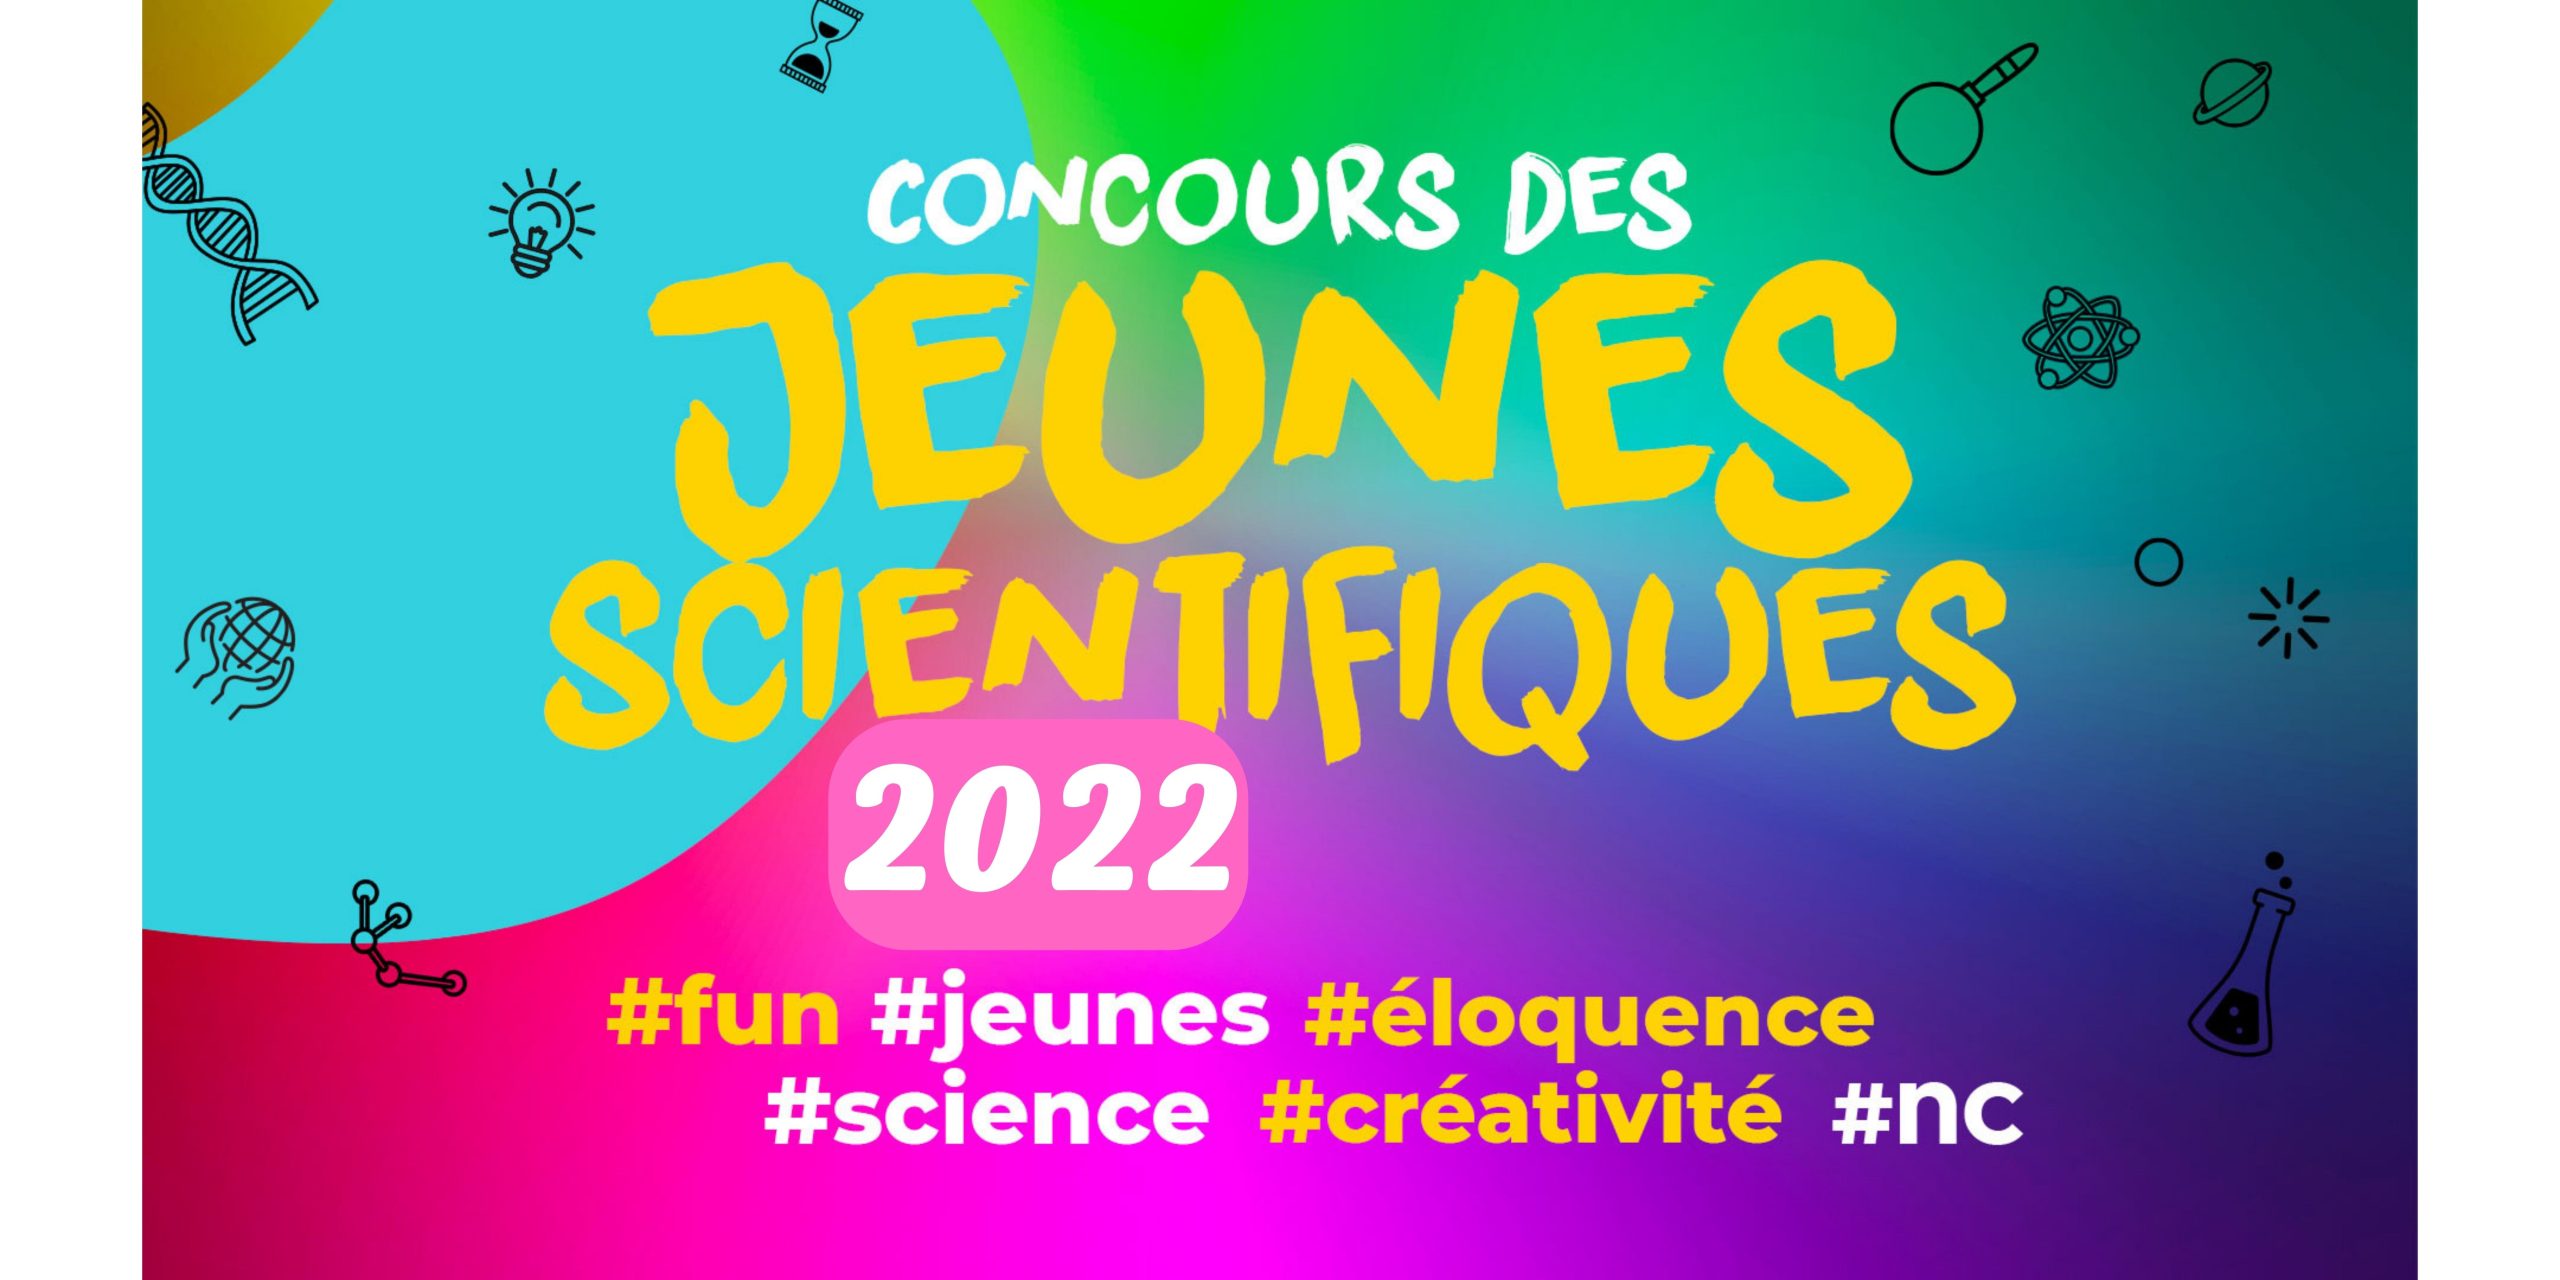 Concours des jeunes scientifiques 2022